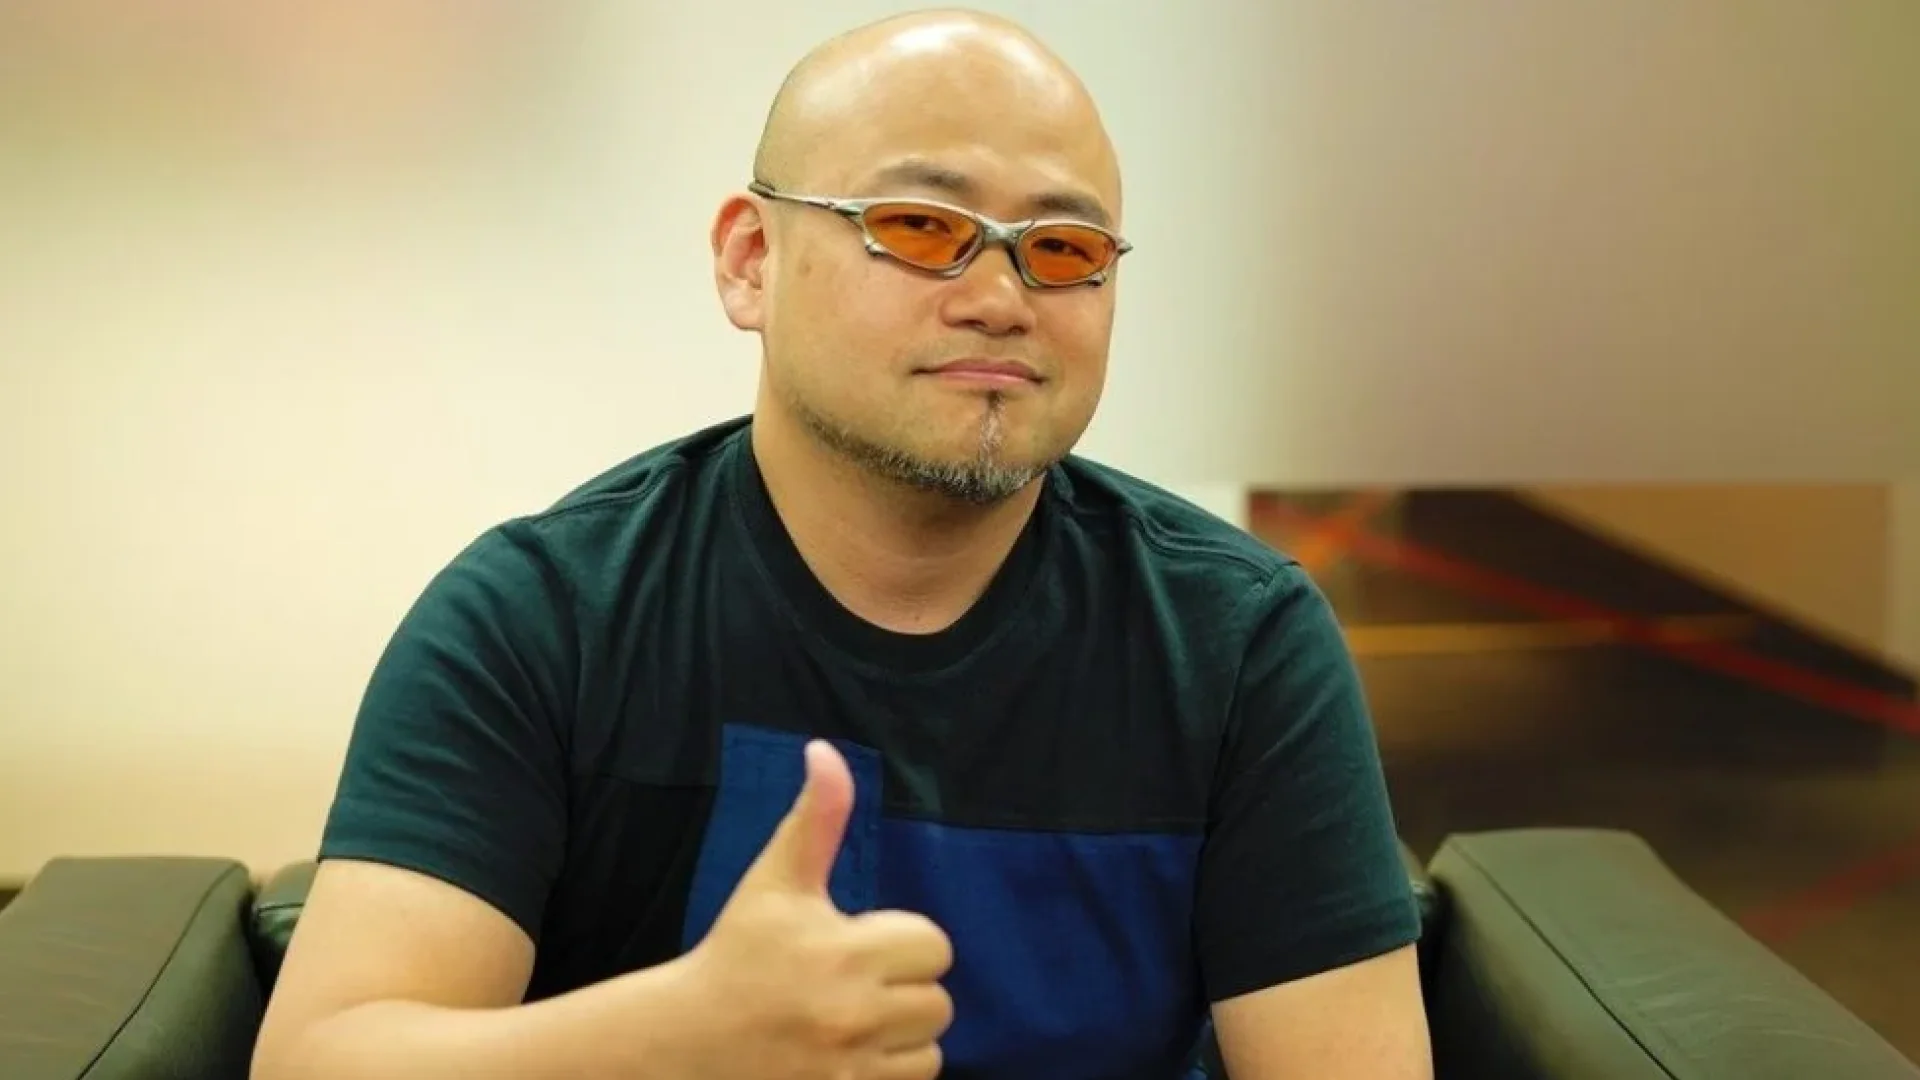 Творець Bayonetta, Хідекі Камія, створив власний YouTube-канал після того, як залишив PlatinumGames